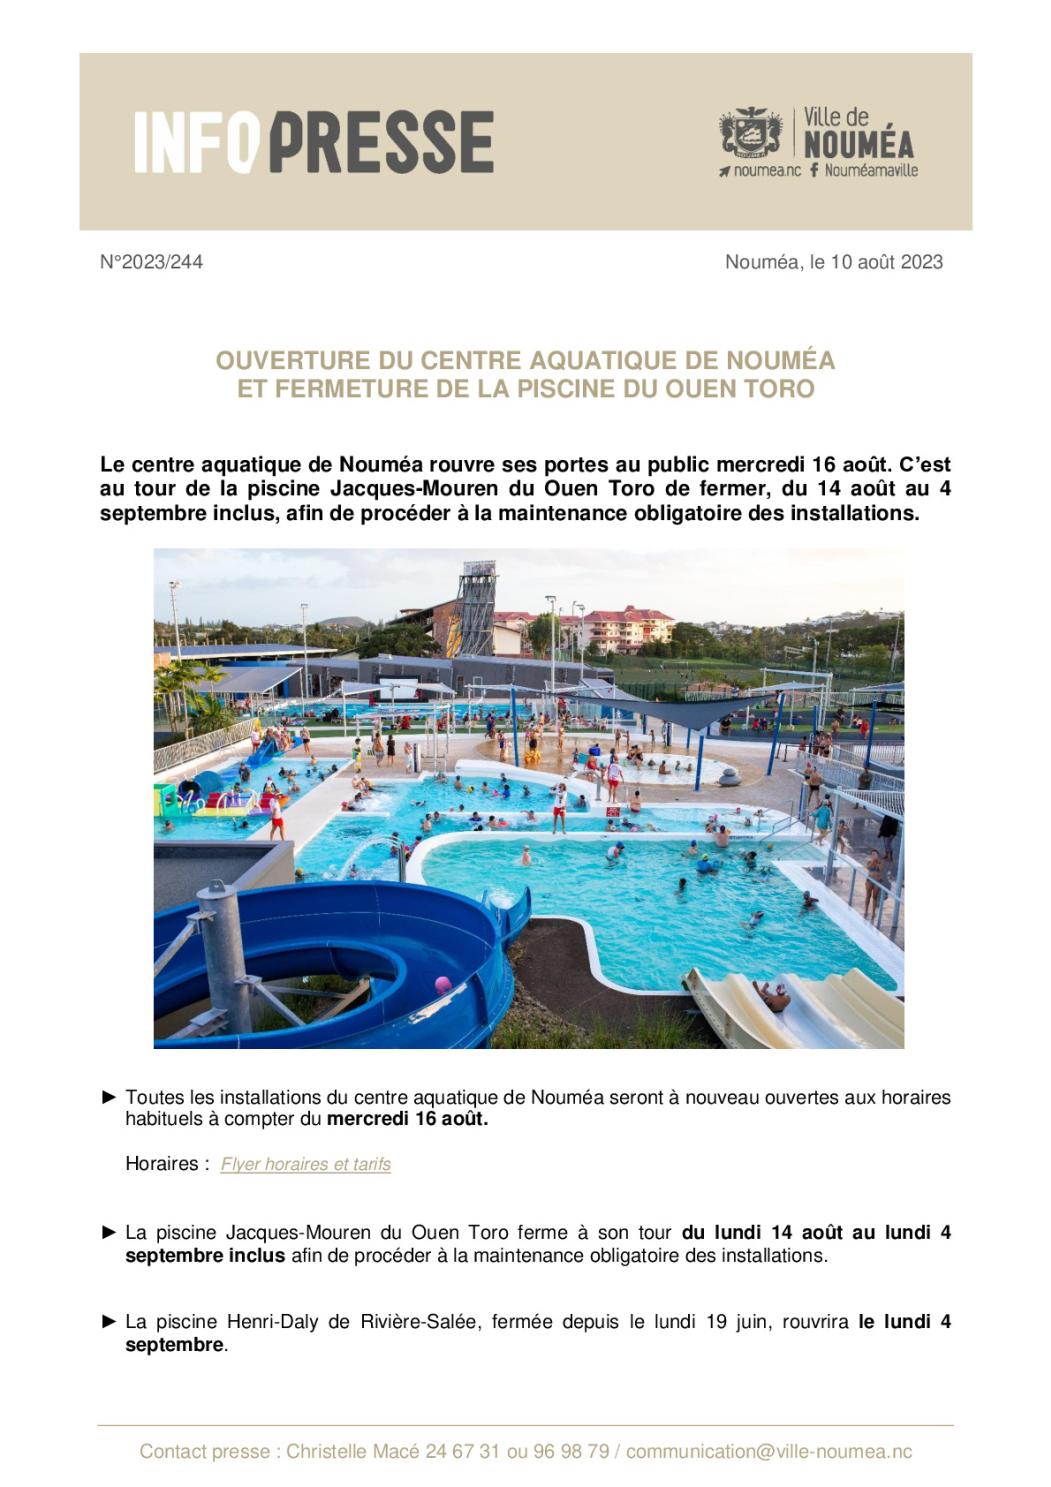 IP 244 Ouverture centre aquatique et fermeture piscine Ouen Toro.pdf